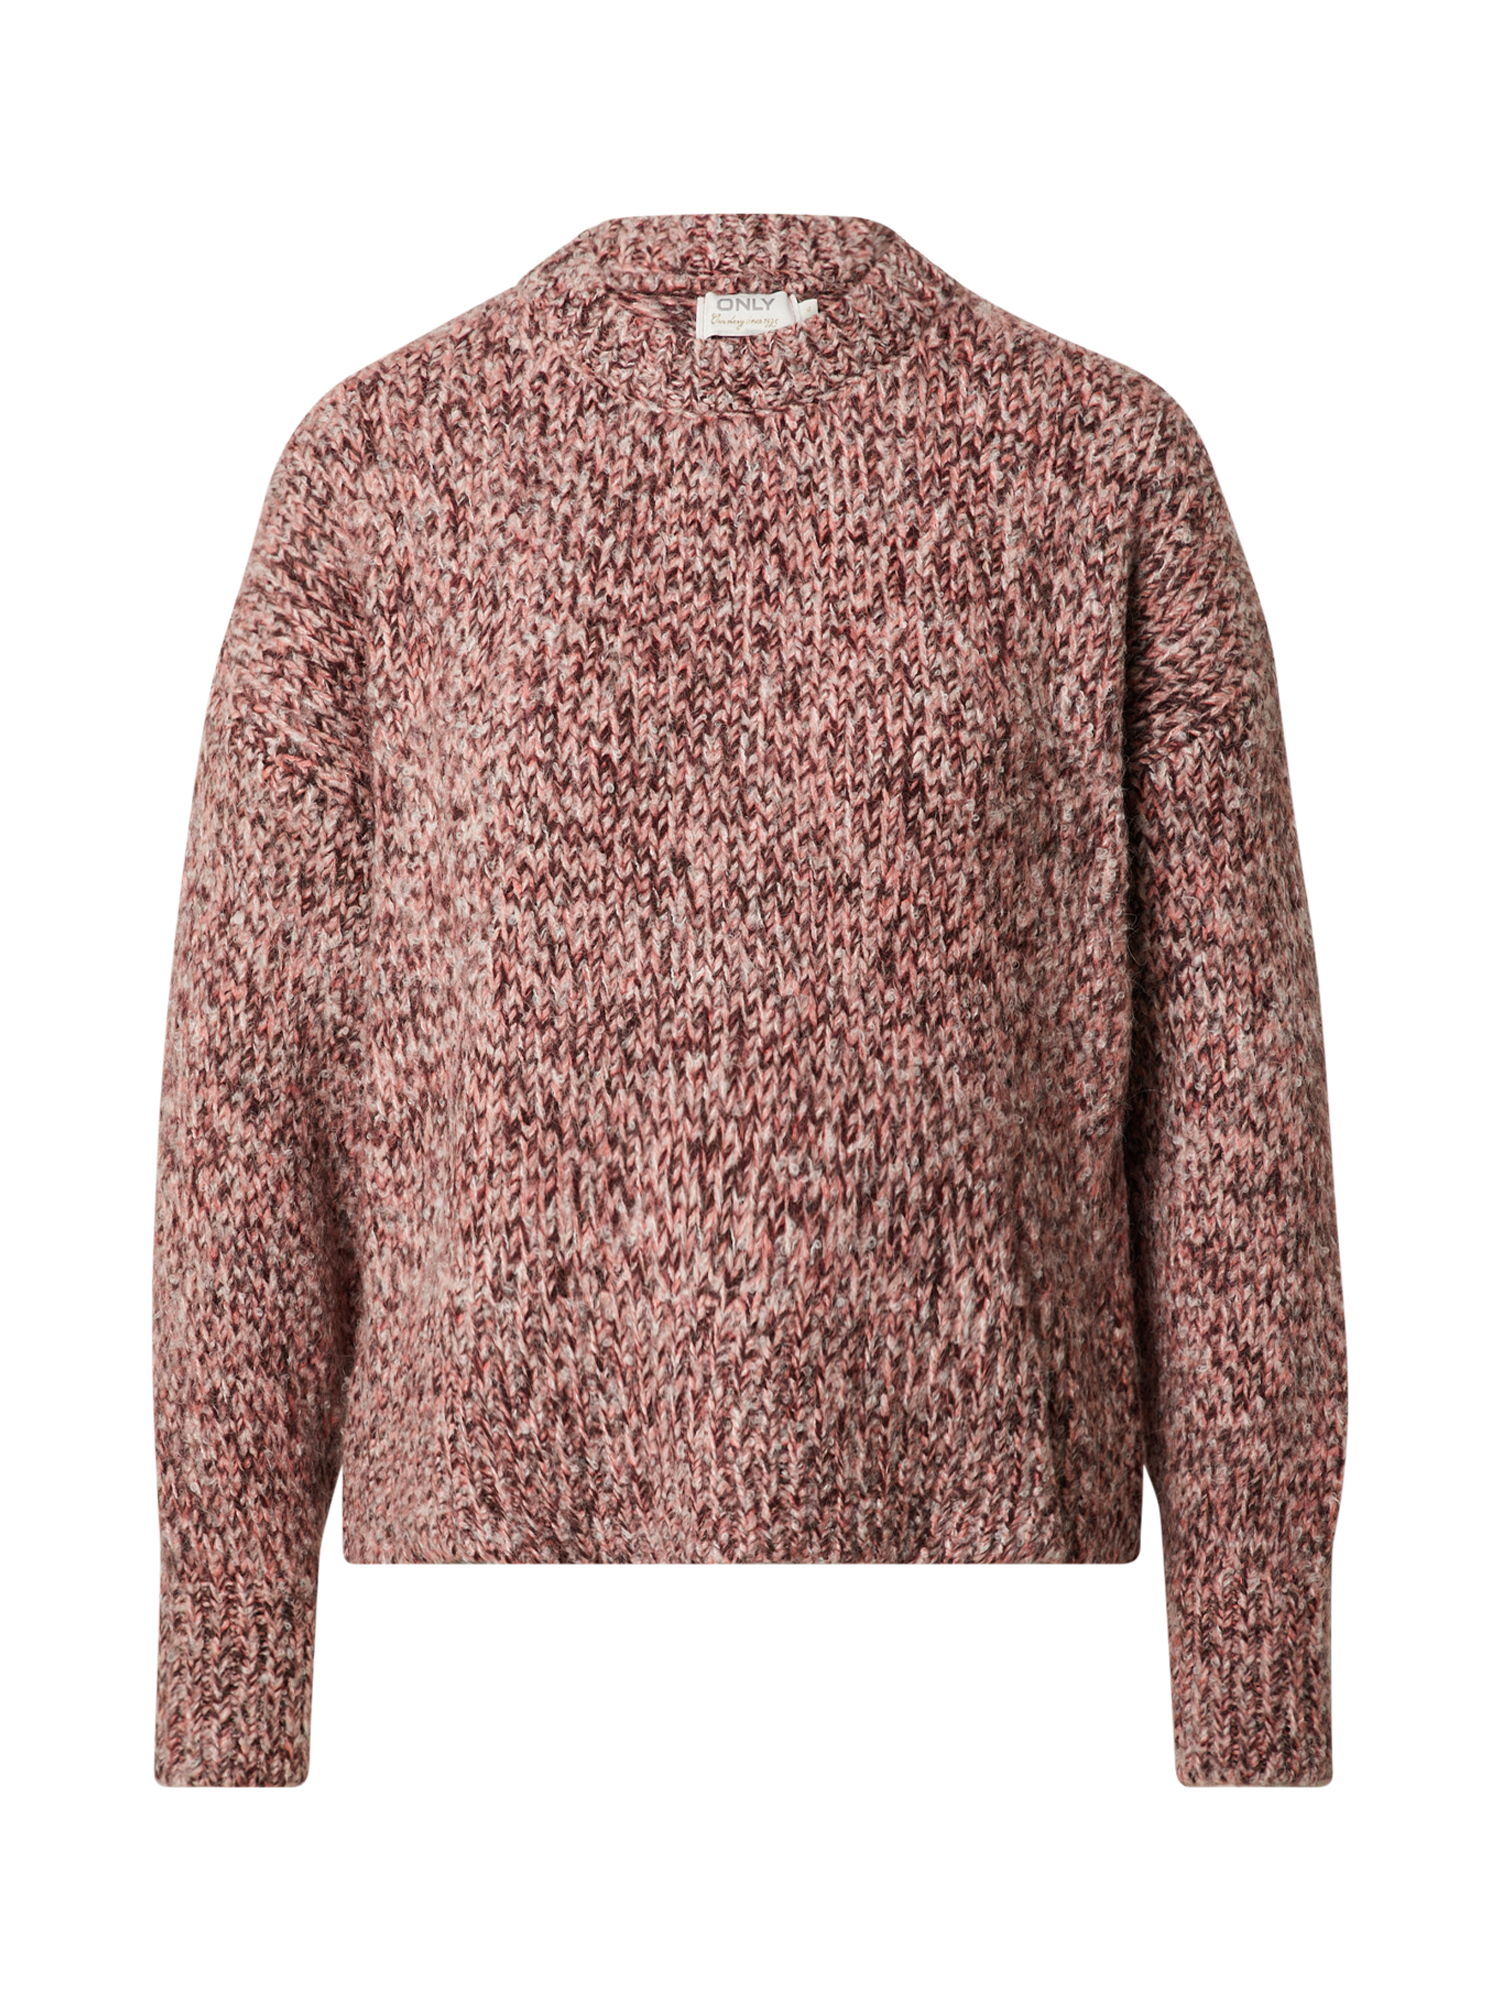 Odzież Kobiety ONLY Sweter Candy w kolorze Kasztanowy, Jasnoróżowy, Różowy Pudrowym 